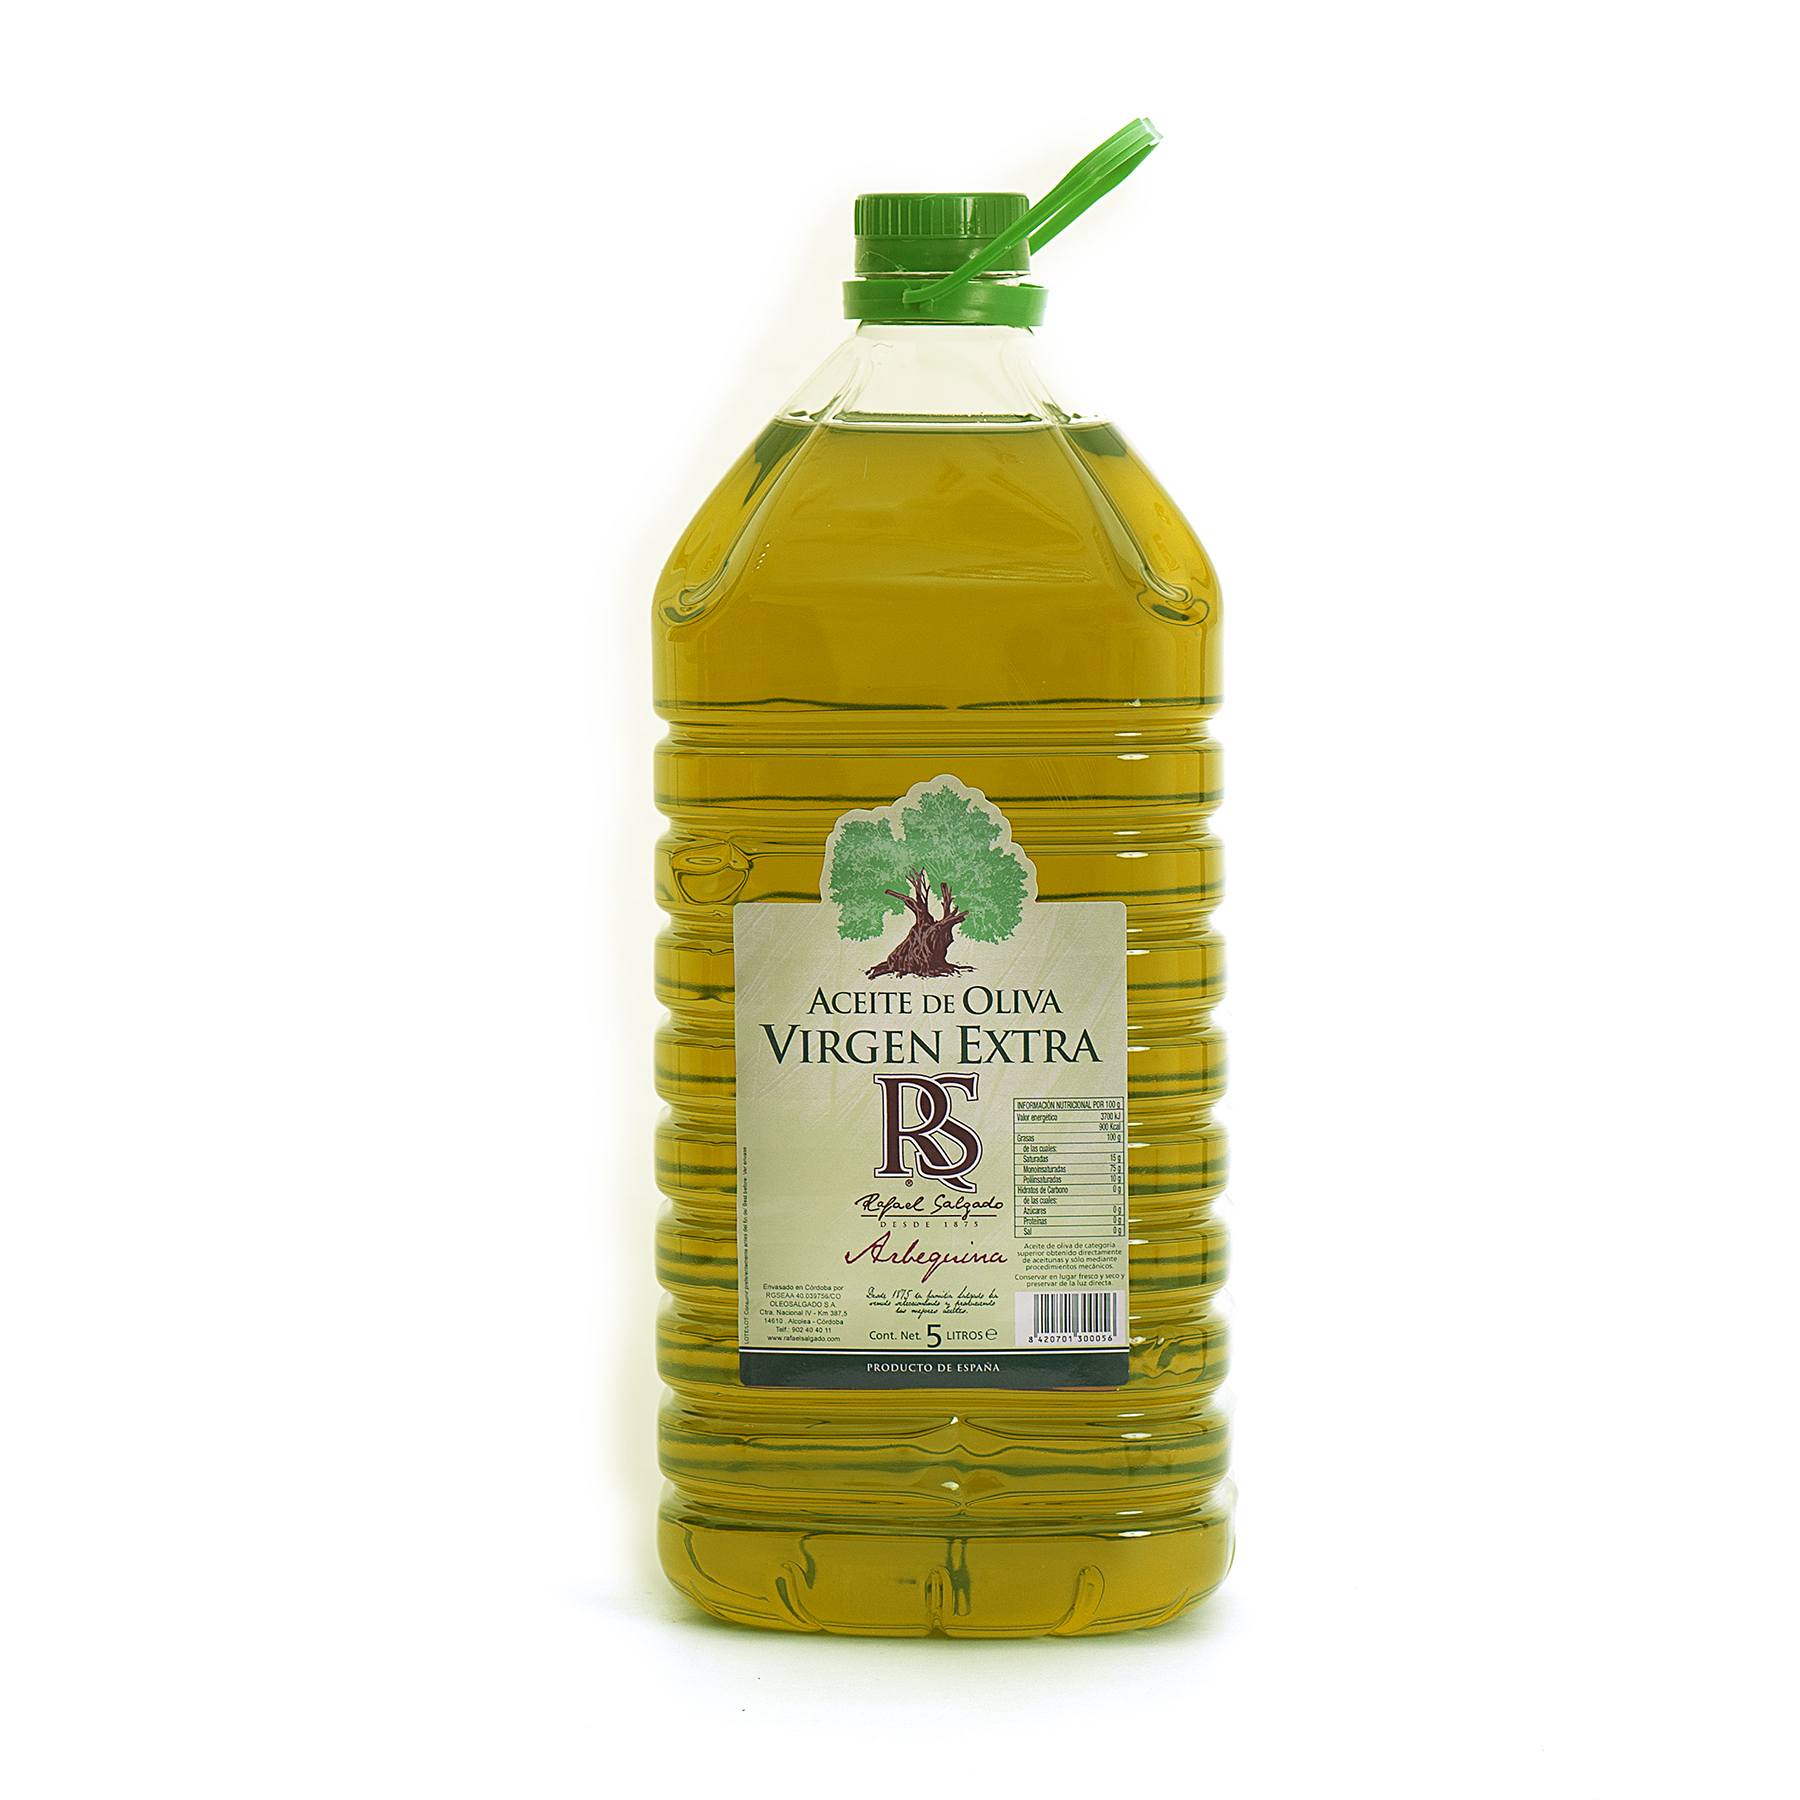 PET 1 litro. Aceite oliva virgen extra arbequina